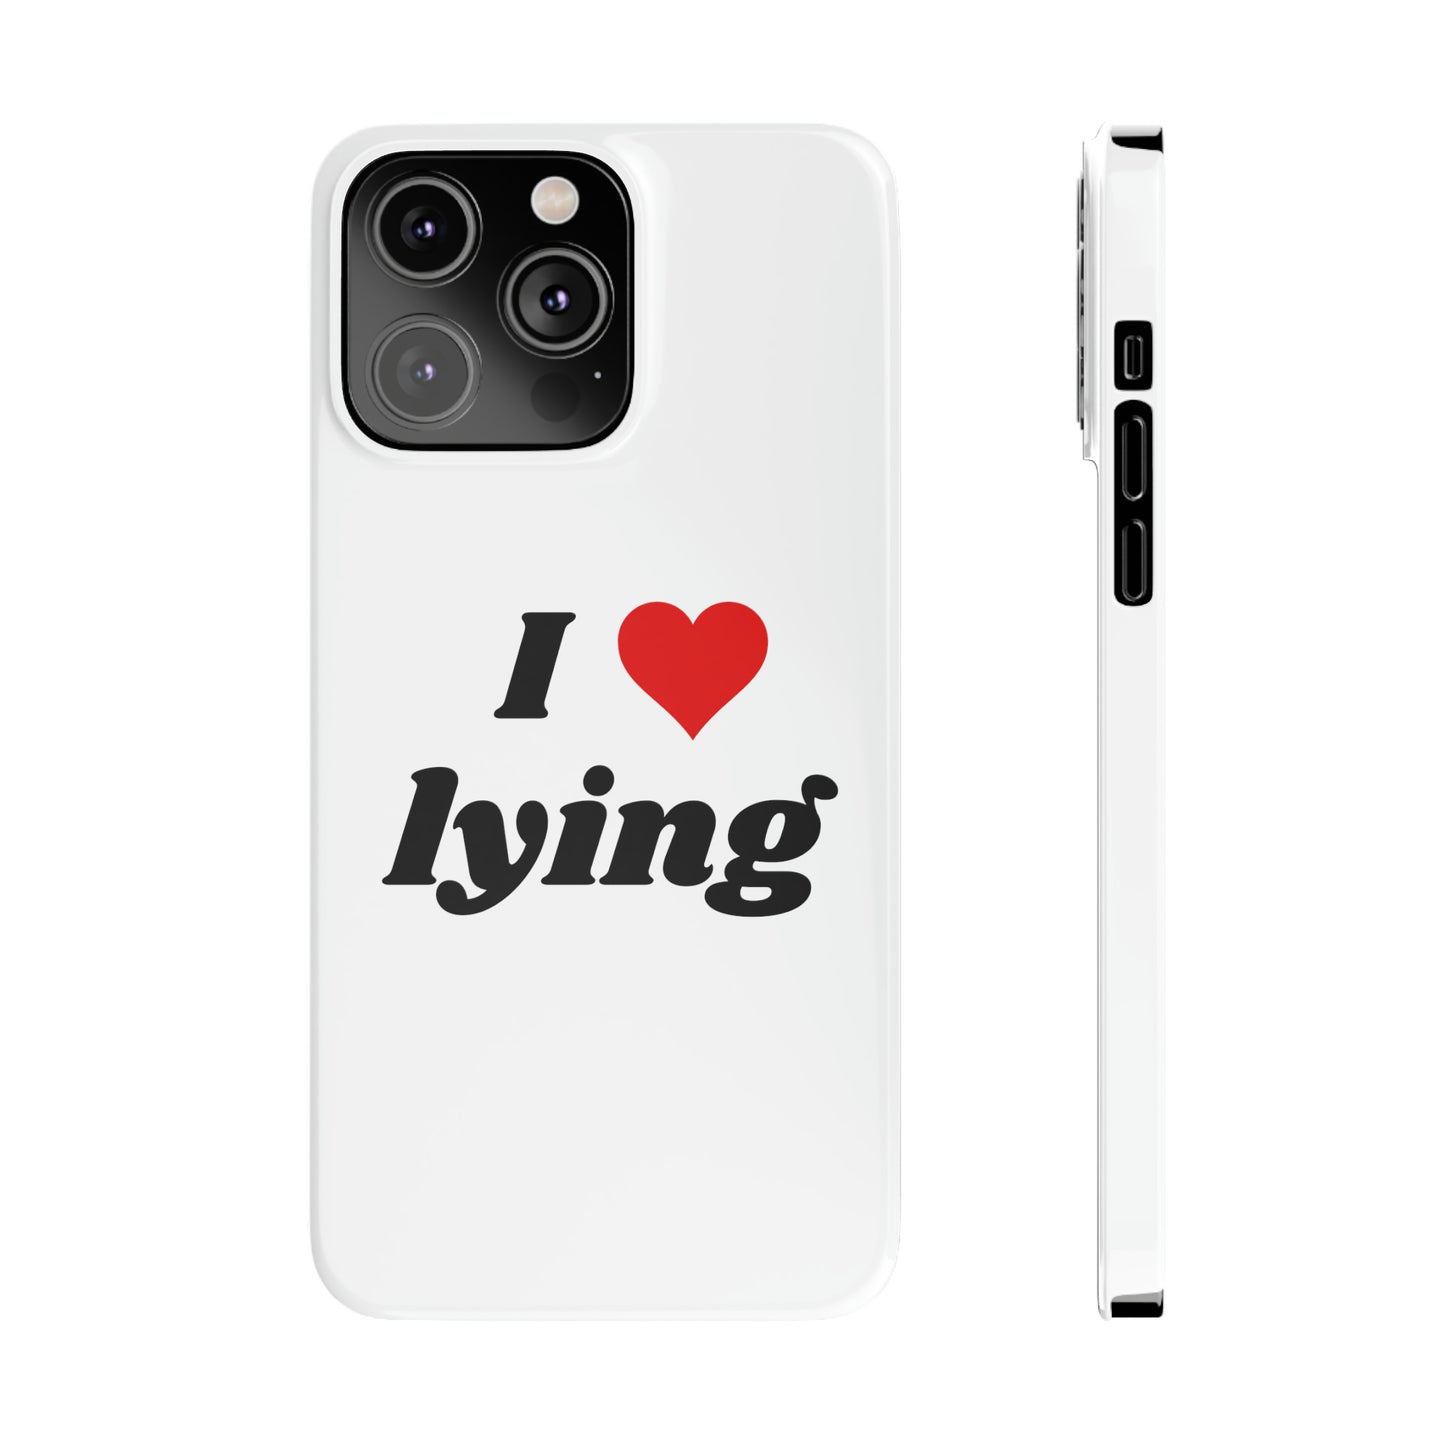 I <3 Lying iPhone Case